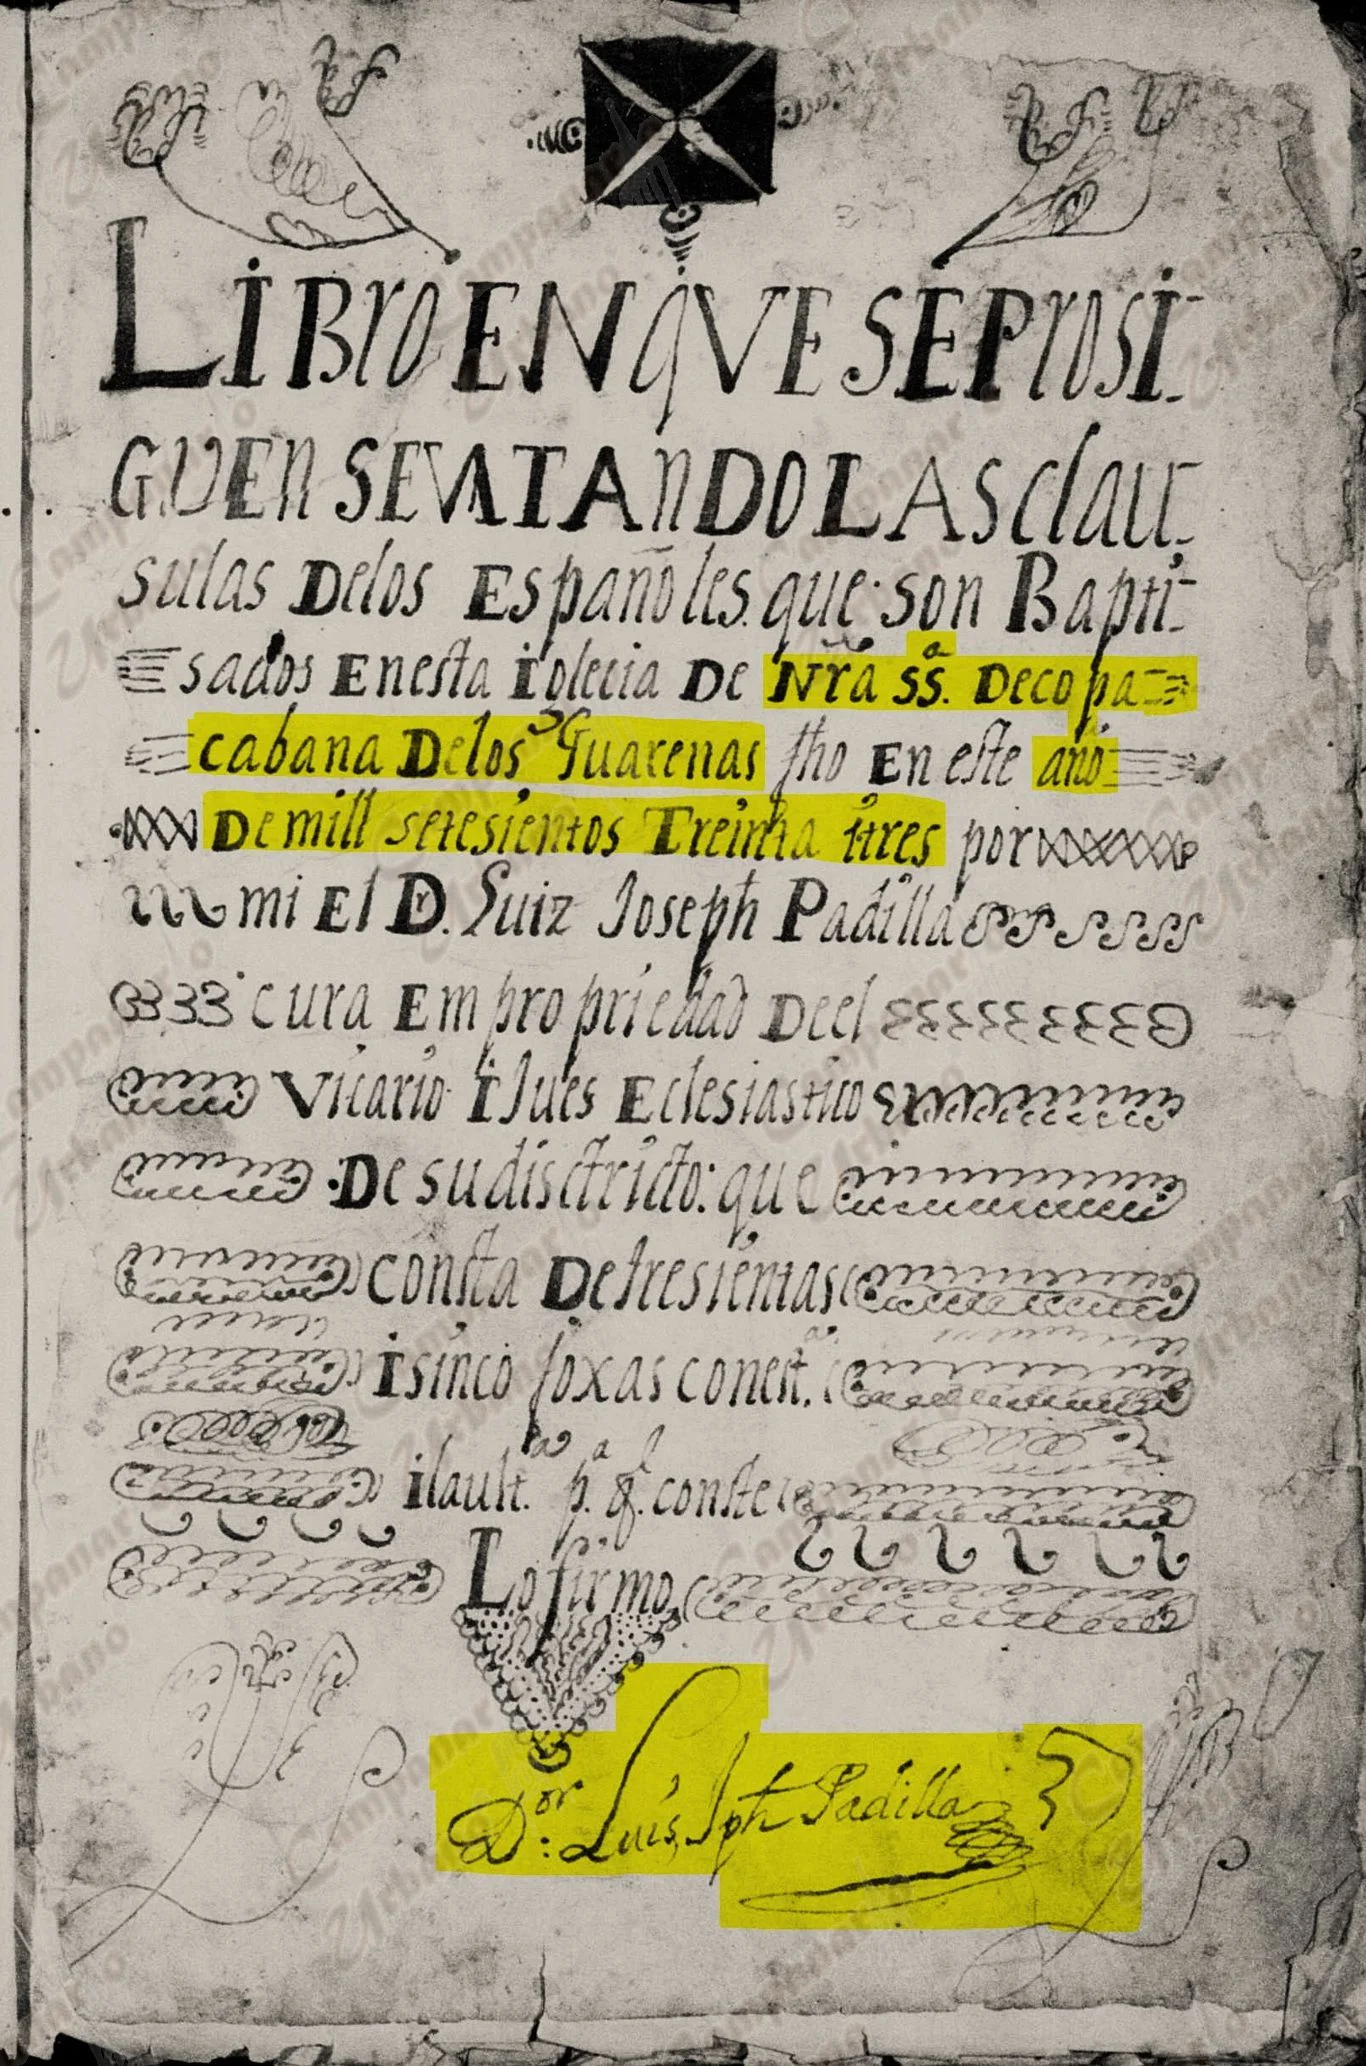 Libro de españoles bautizados en la Iglesia de Nuestra Señora de Copacabana de los Guarenas. Pbro. Don Luis Joseph Padilla. Año 1733.